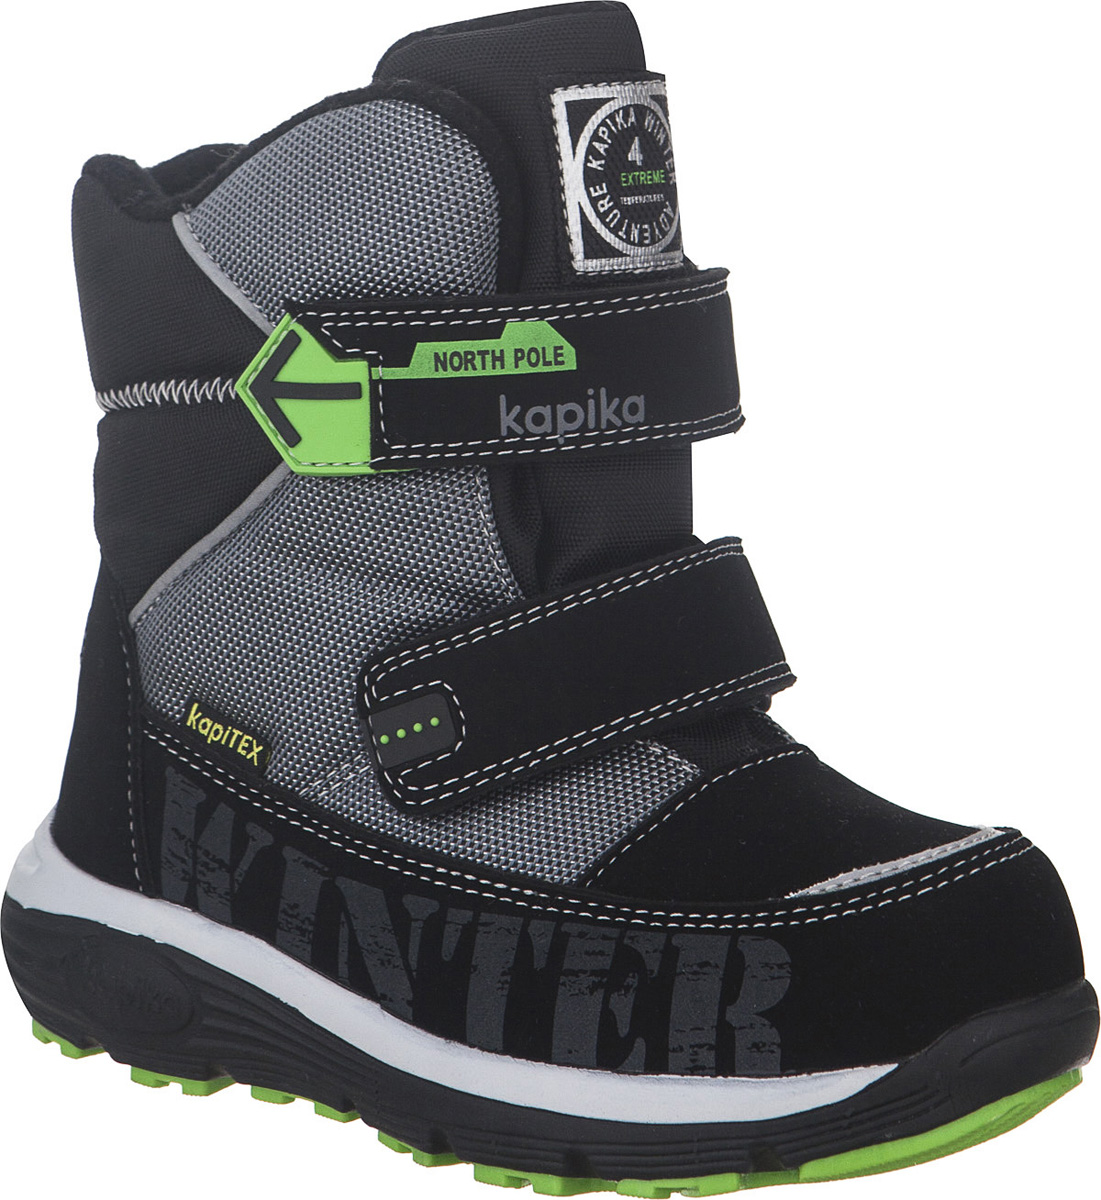 Ботинки для мальчика Kapika KapiTEX, цвет: черный, серый. 42247-2. Размер 28